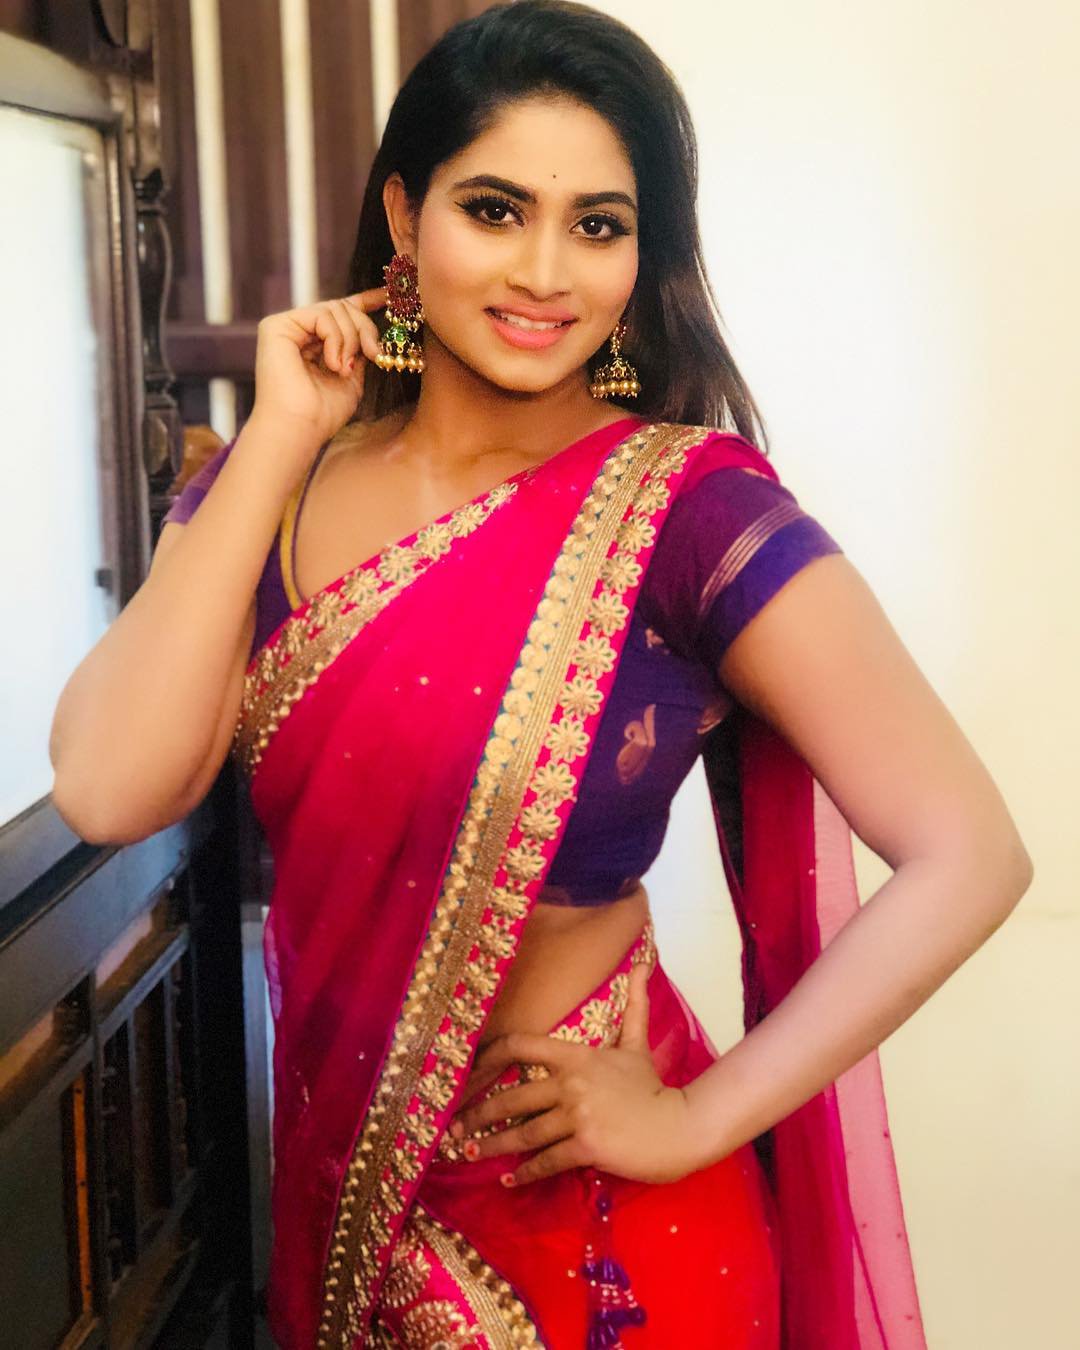 Shivani Narayanan Hot Photos In Saree - Hot Actress Photos